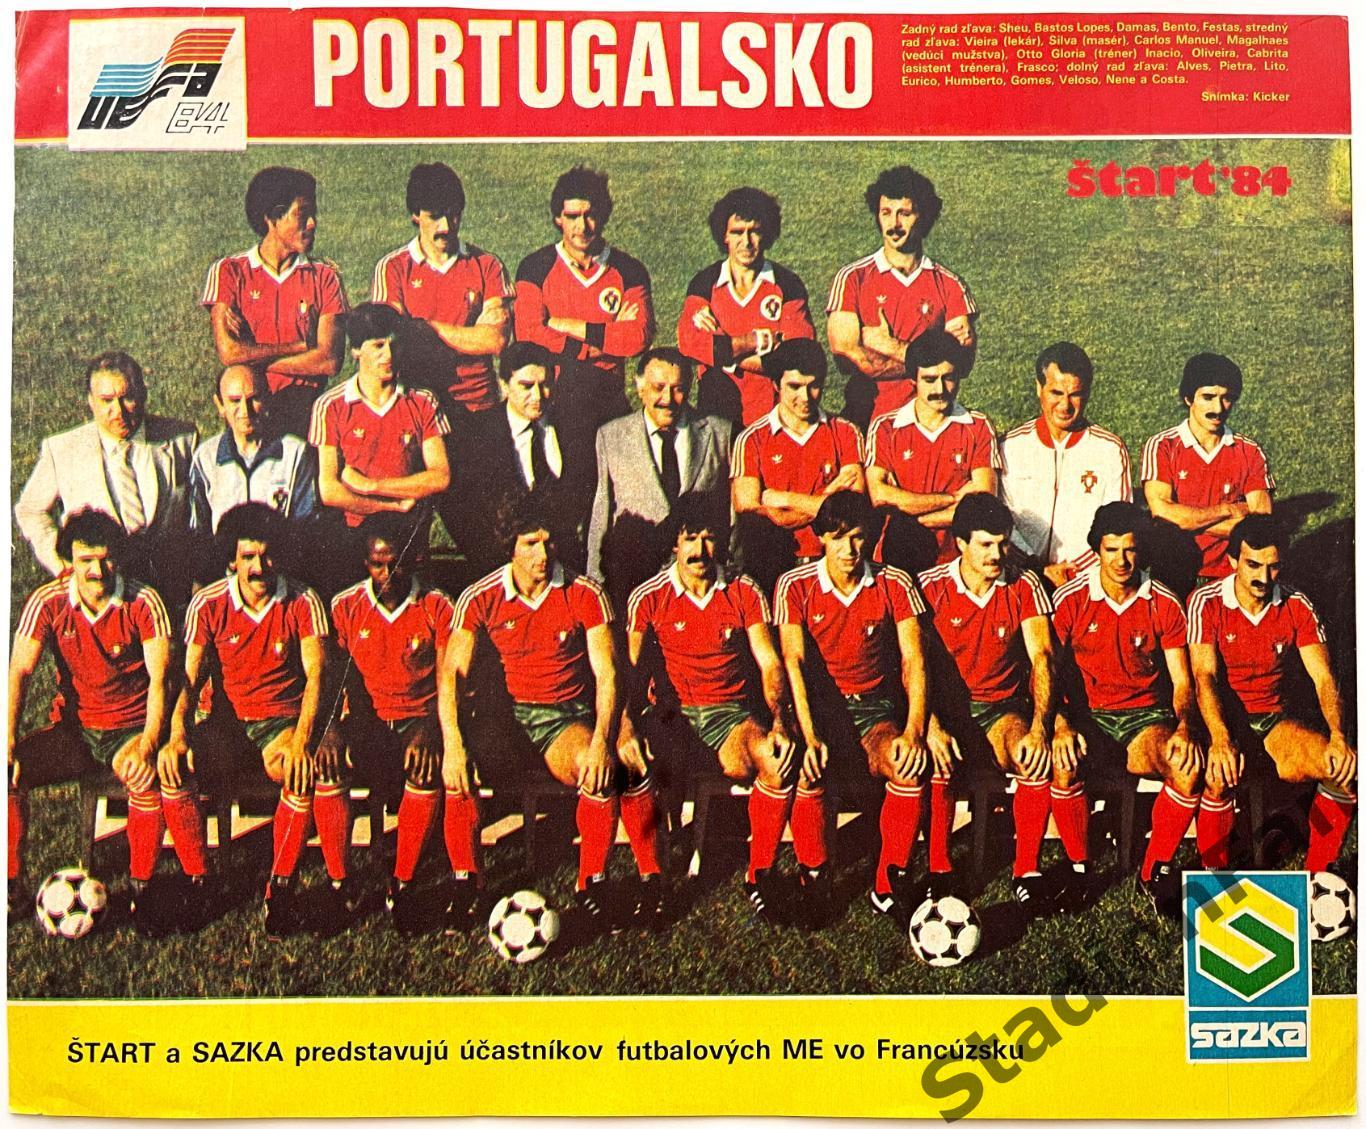 Постер из журнала Start (Старт) - Portugalsko, 1984